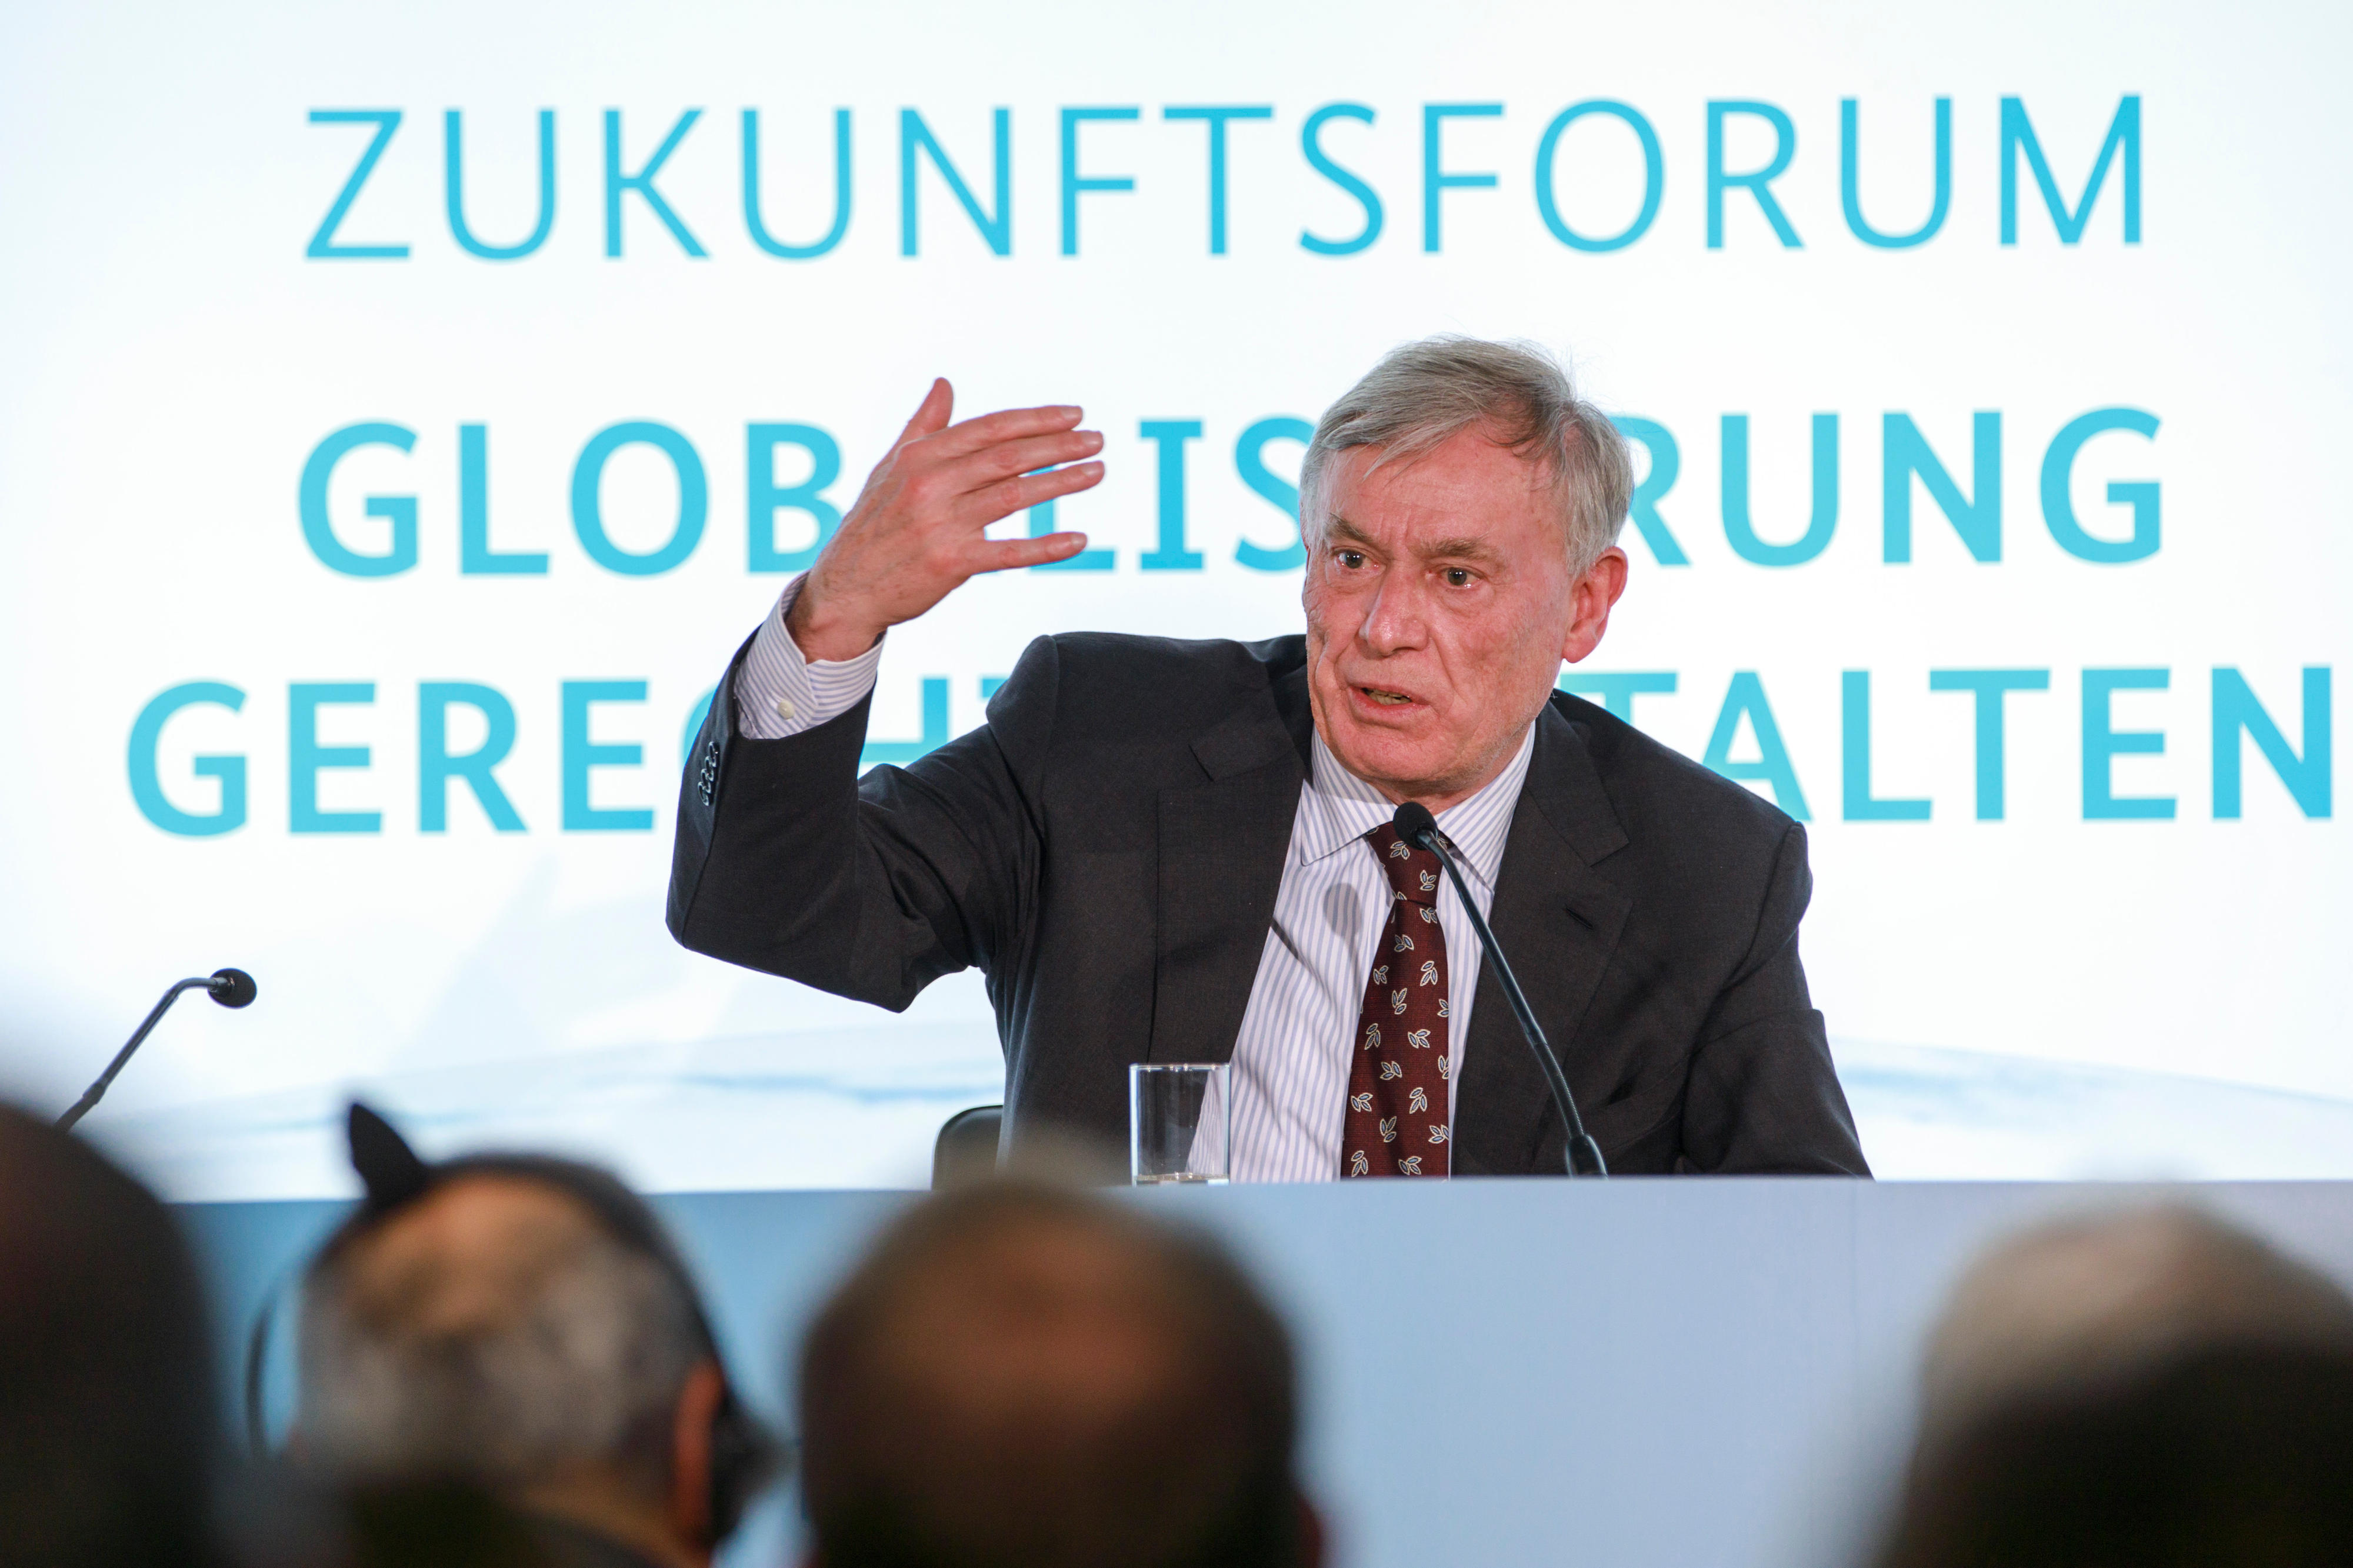 Der ehemalige Bundespräsident Horst Köhler auf dem Zukunftsforum Globalisierung Gerecht Gestalten im Februar 2017 in Berlin